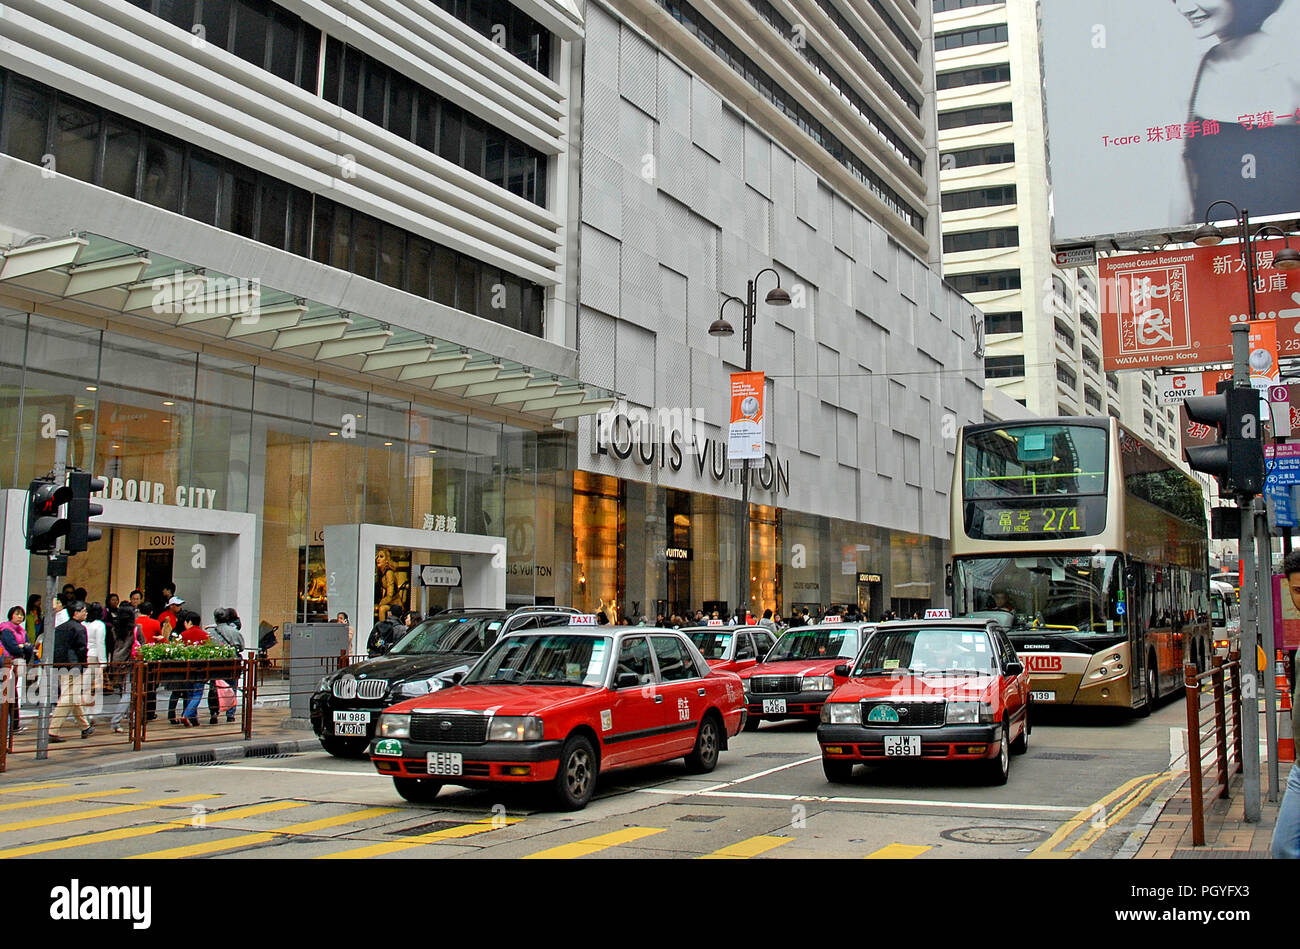 Harbour city mall, Canton road, Tsin Sha Tsui, Kowloon, Hong Kong